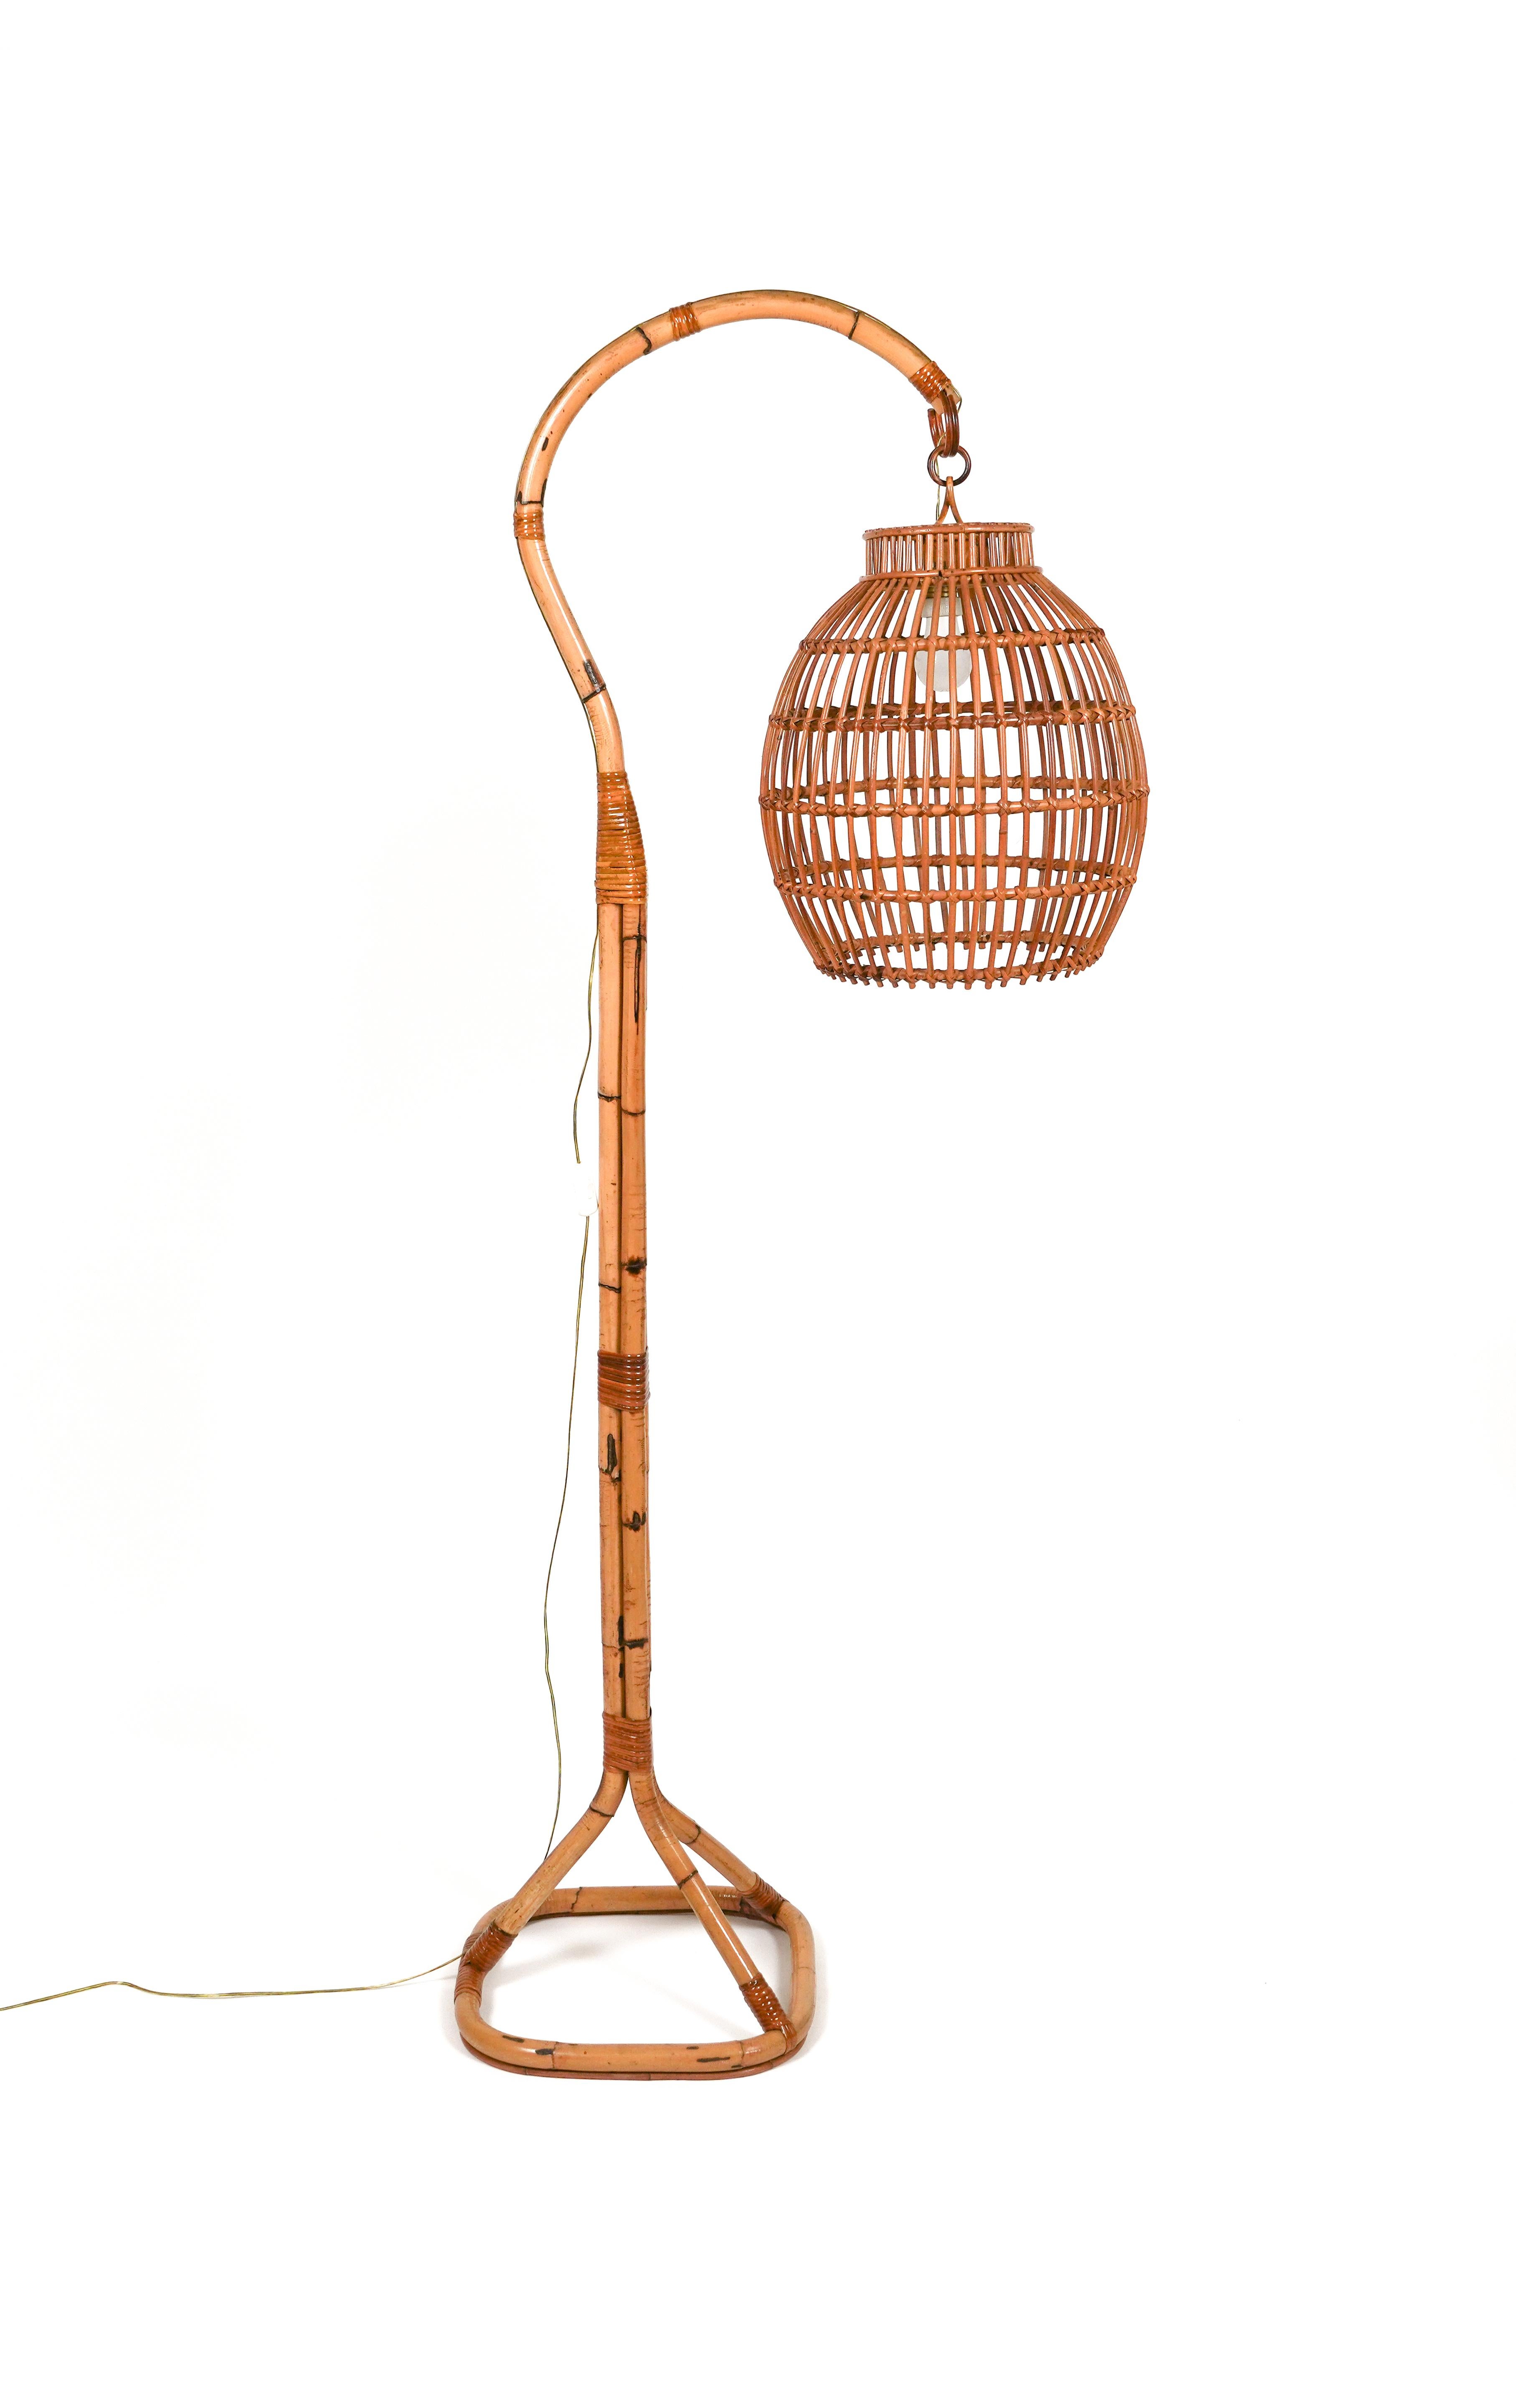 Etonnant lampadaire du milieu du siècle en bambou et rotin dans le style de Louis Sognot.

Fabriqué en Italie dans les années 1960.

Il utilise 1 ampoule. 

Louis Sognot était un designer français connu pour ses meubles élégants fabriqués à partir